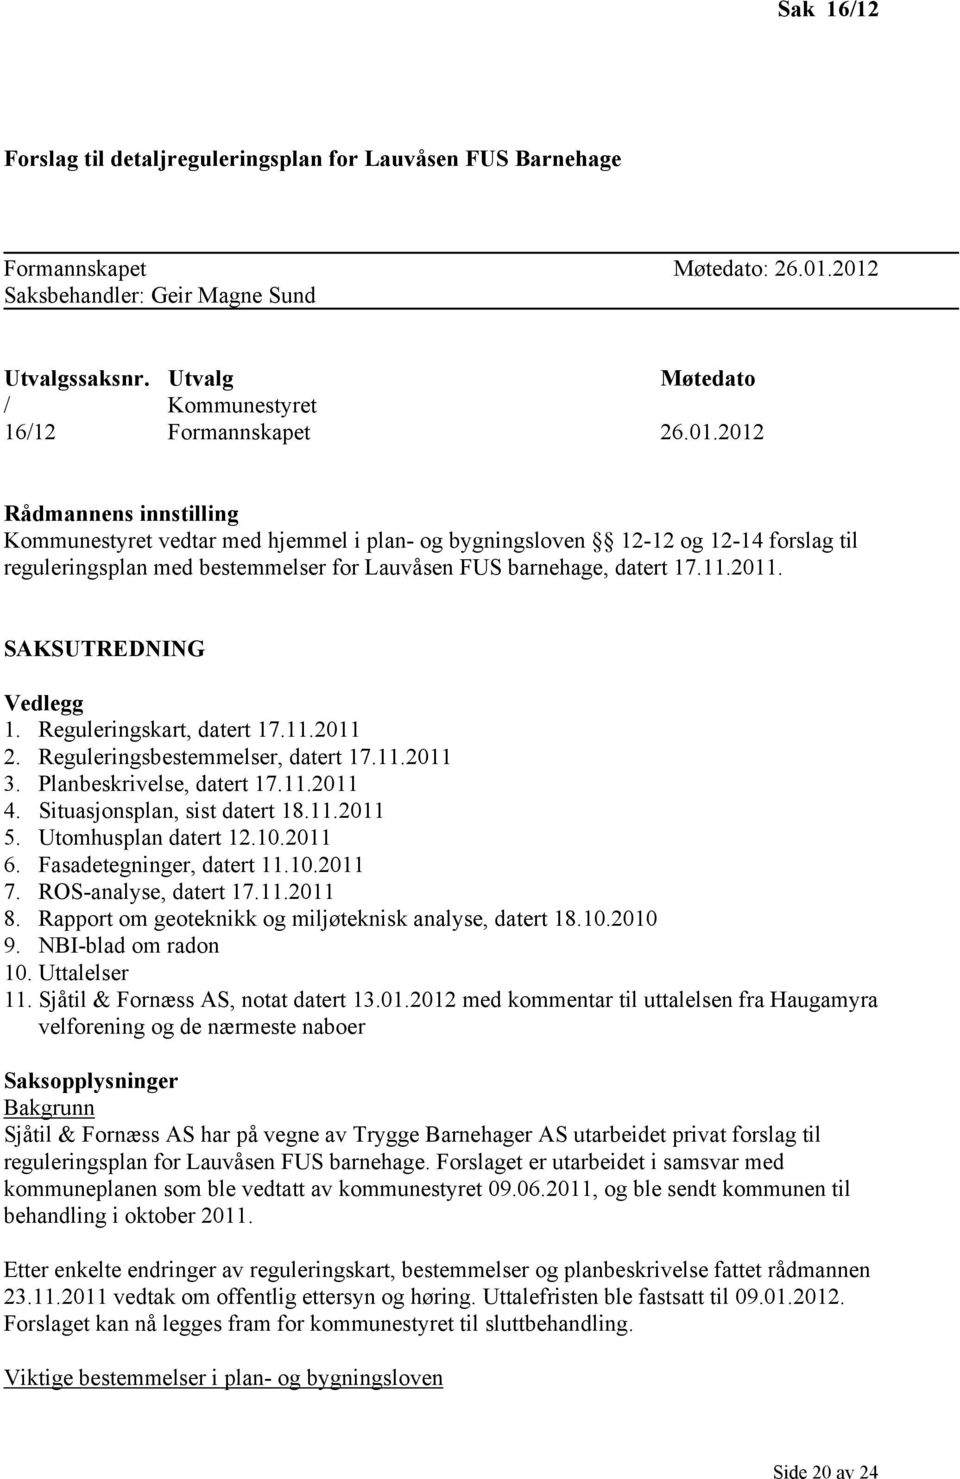 2012 Rådmannens innstilling Kommunestyret vedtar med hjemmel i plan- og bygningsloven 12-12 og 12-14 forslag til reguleringsplan med bestemmelser for Lauvåsen FUS barnehage, datert 17.11.2011.